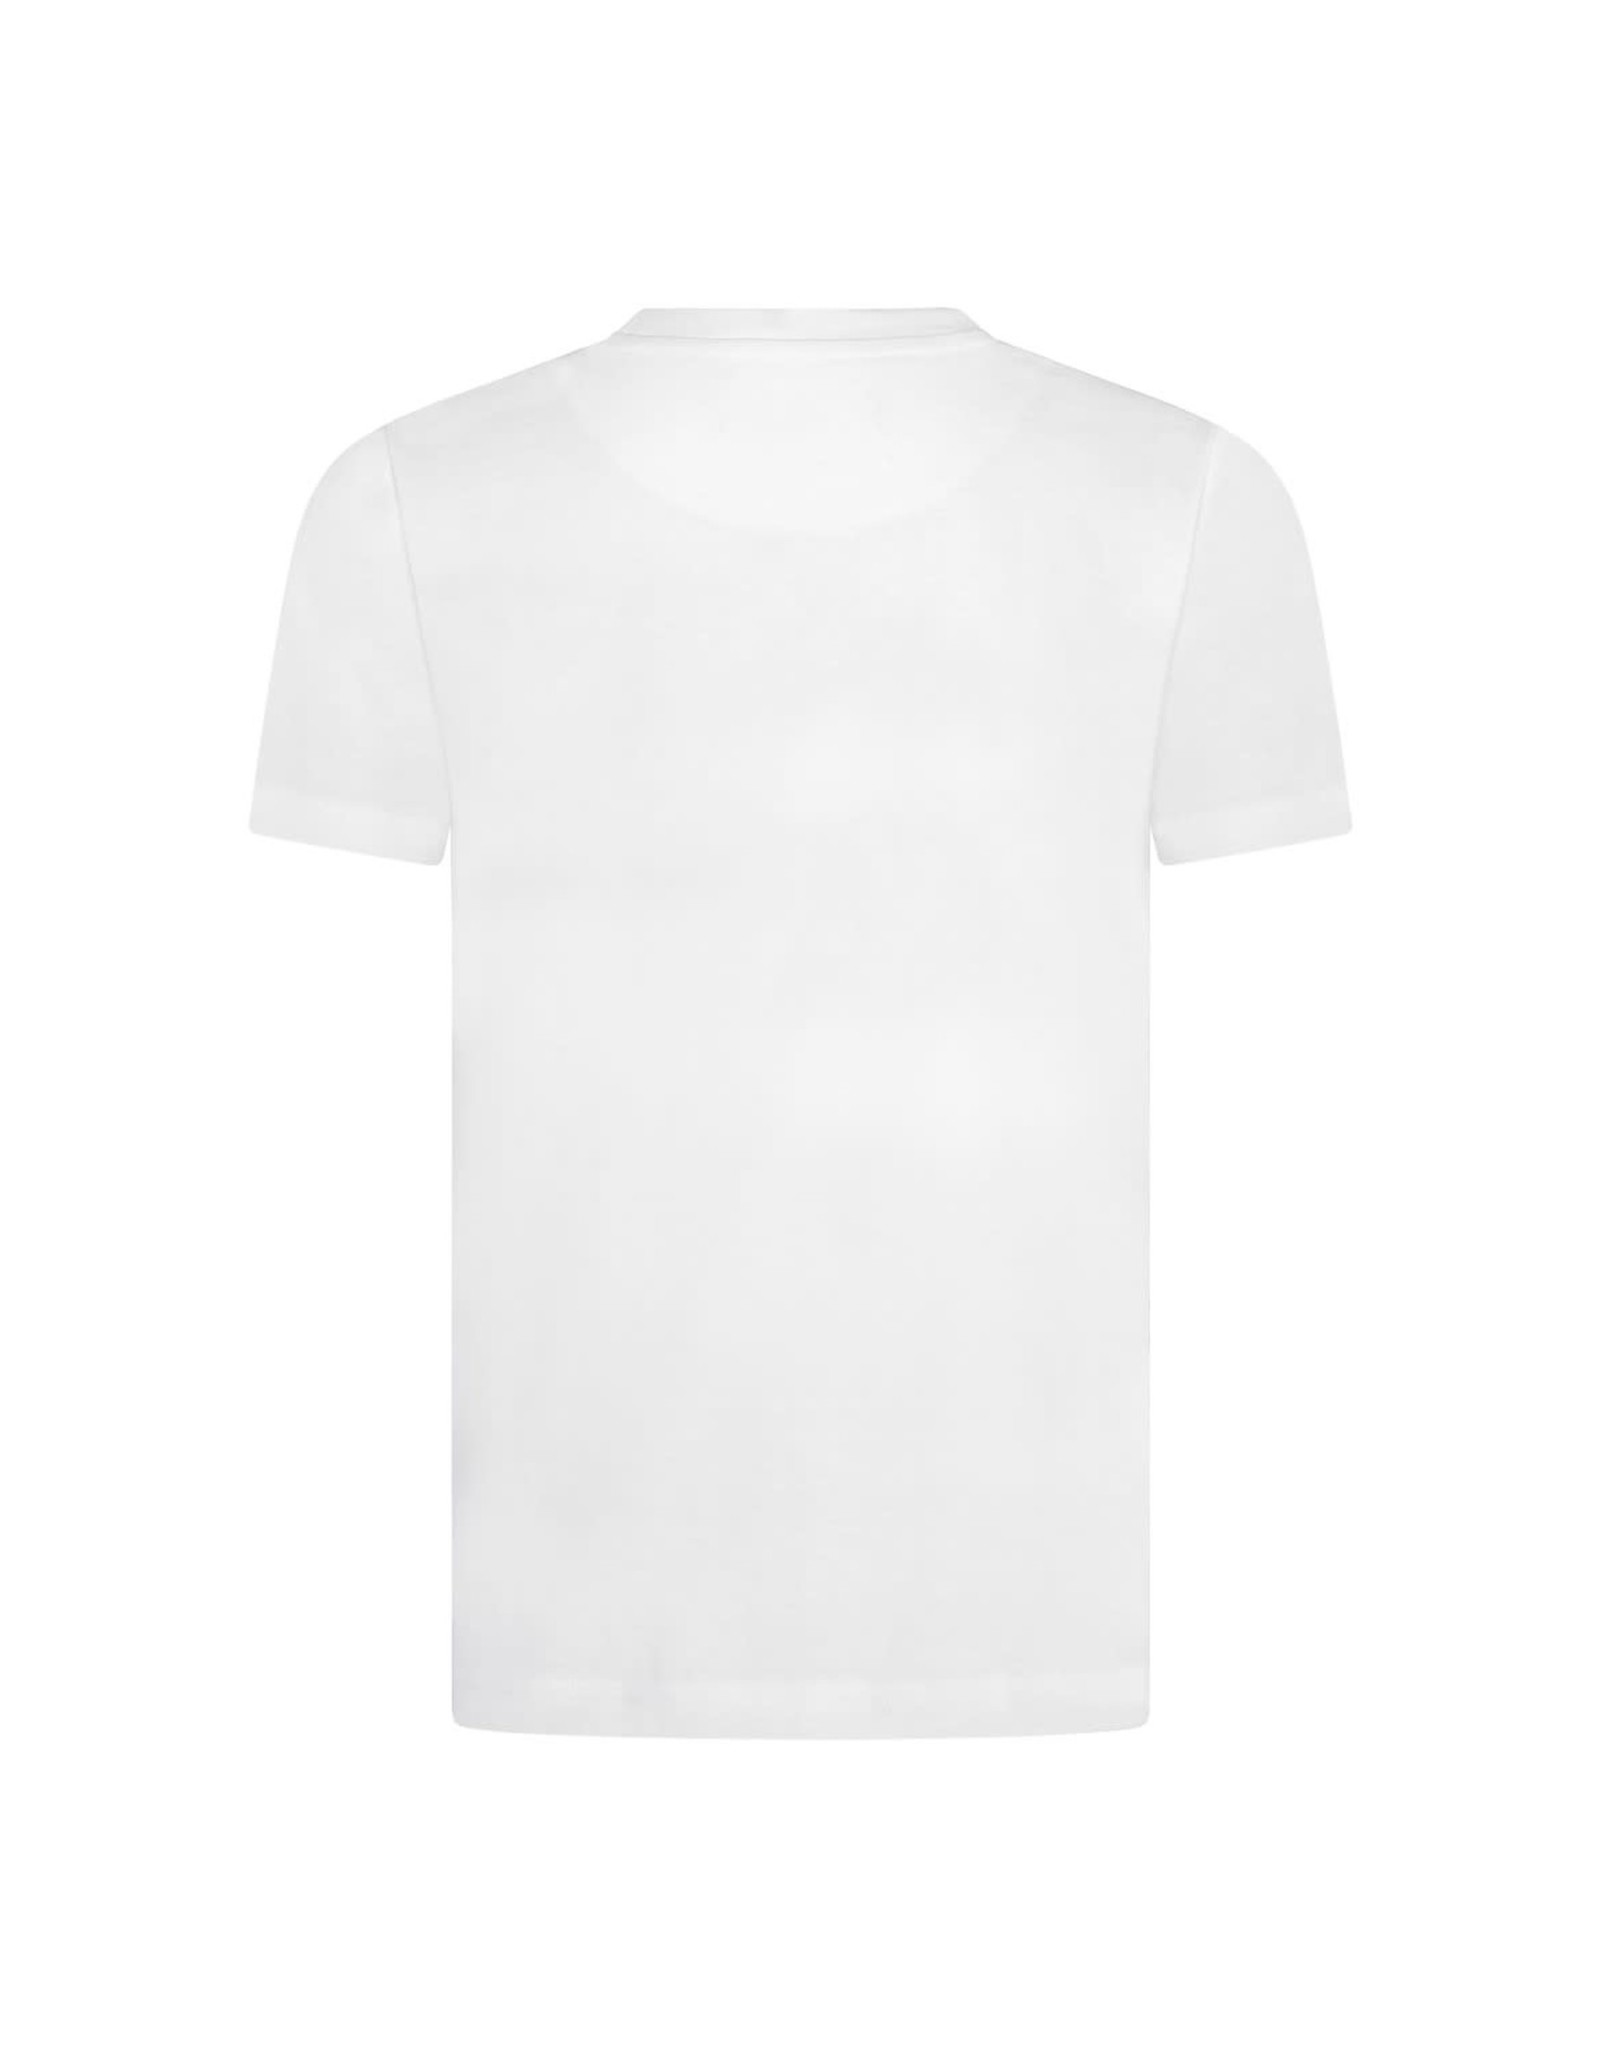 Lyle & Scott Classic T-Shirt Bright White